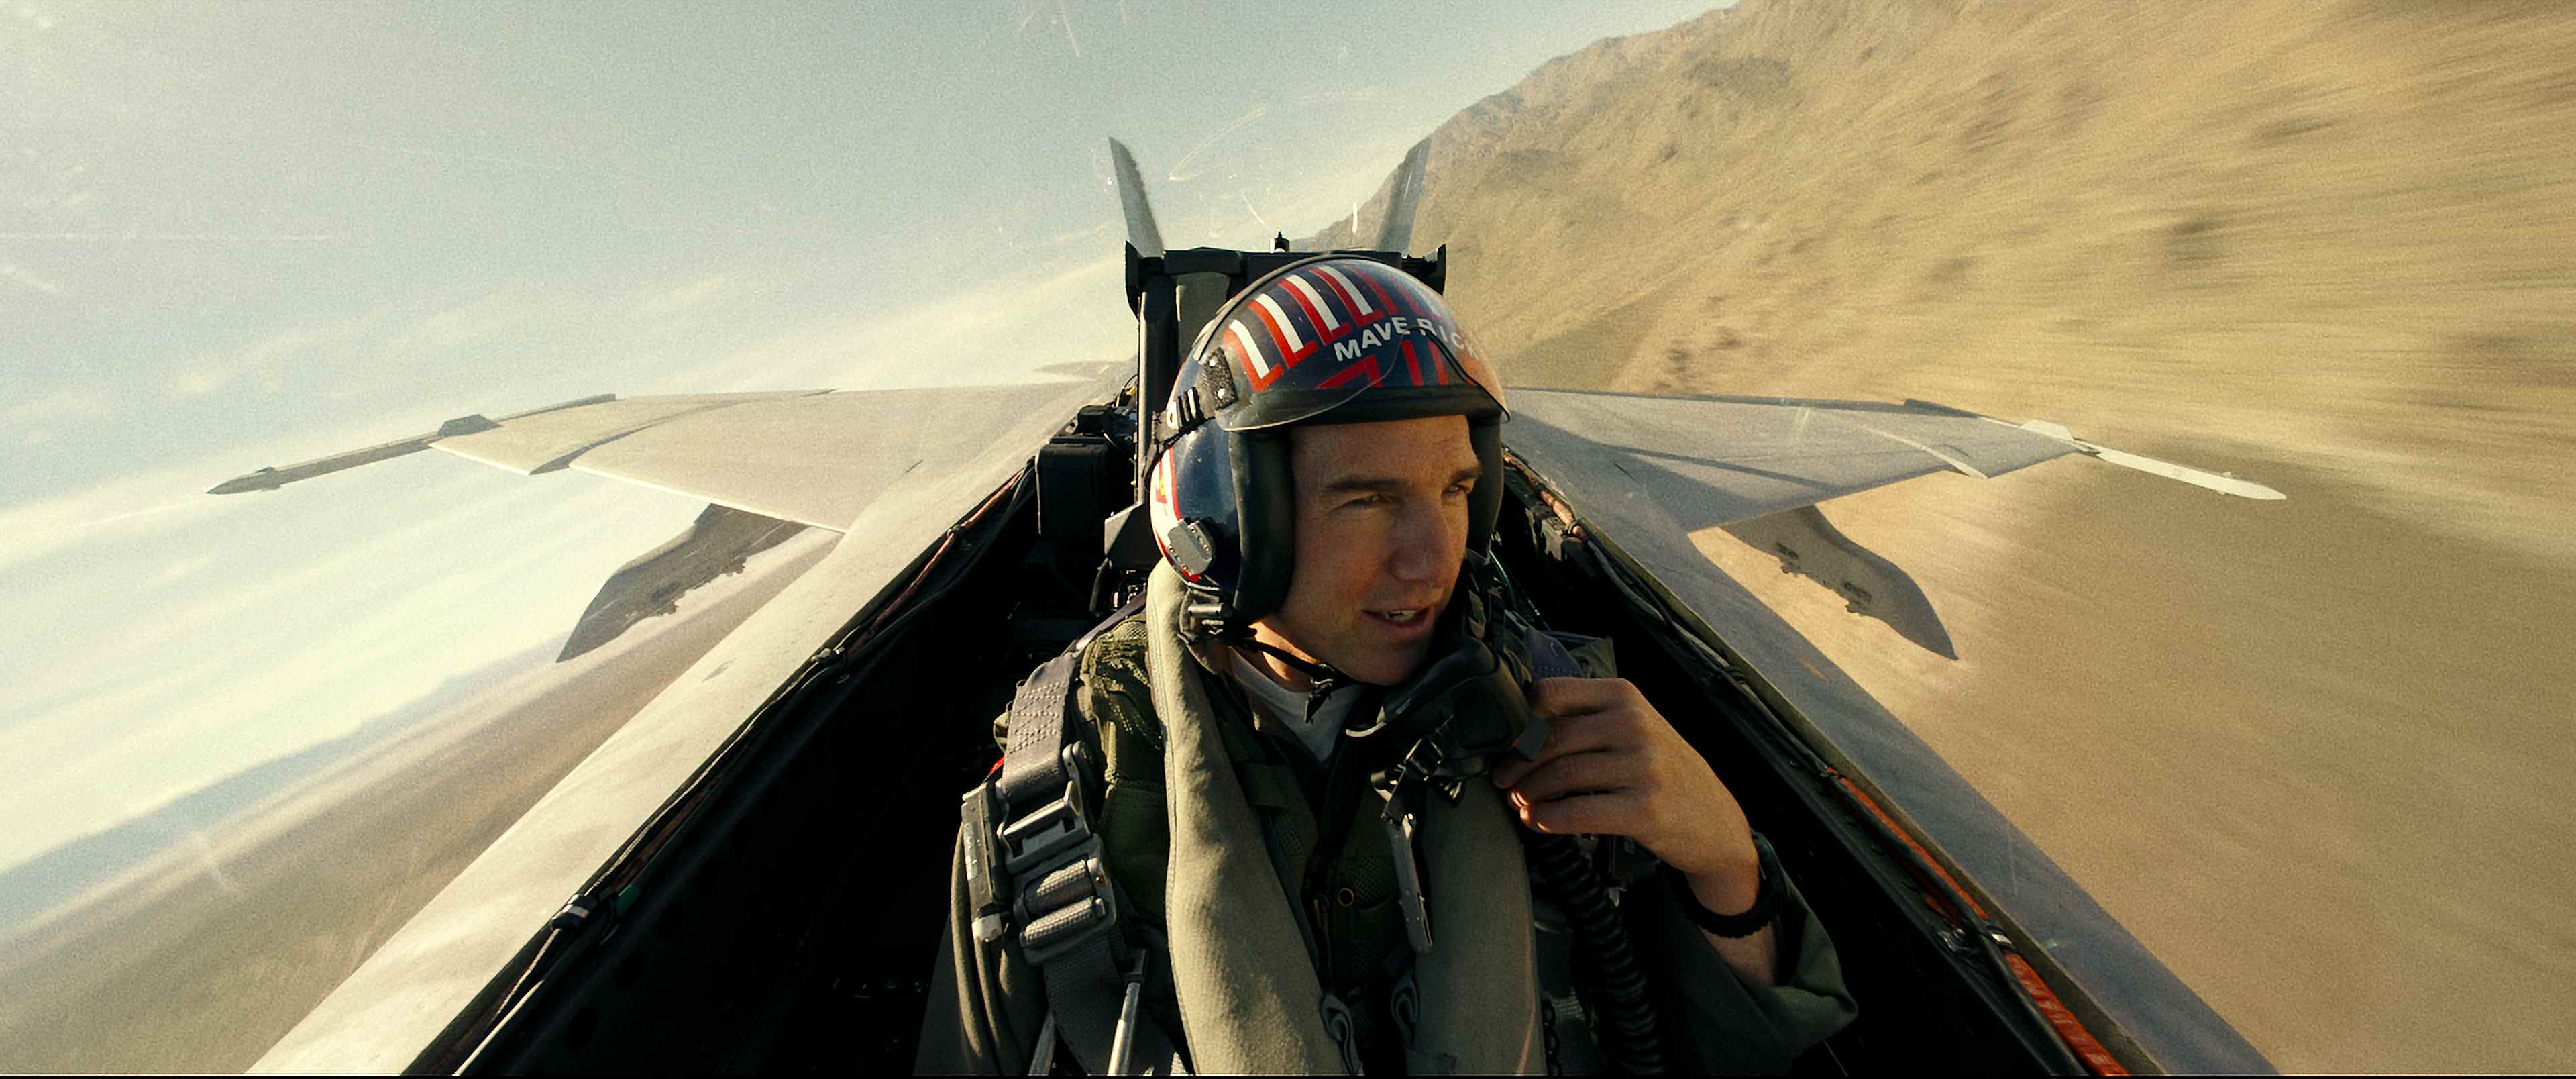 Tom Cruise joue le capitaine Pete "Maverick" Mitchell dans Top Gun : Maverick de Paramount Pictures, Skydance et Jerry Bruckheimer Films.